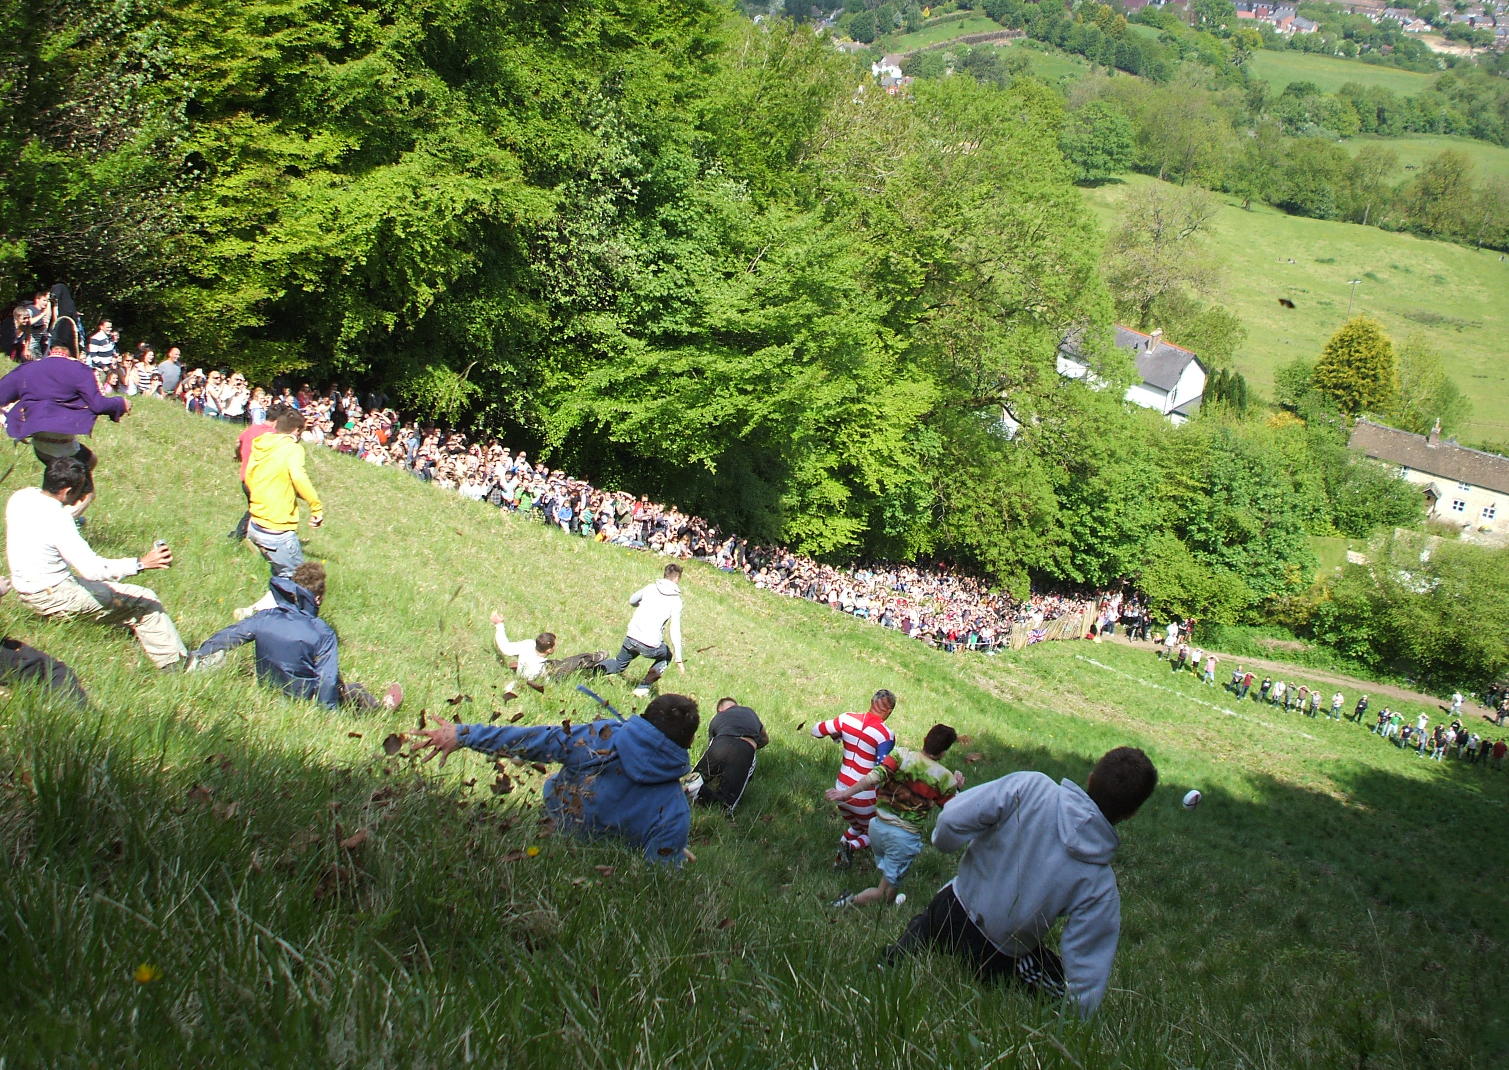 dans le gloucestershire, en angleterre, les gens se rassemblent pour faire rouler le fromage en bas d’une colline